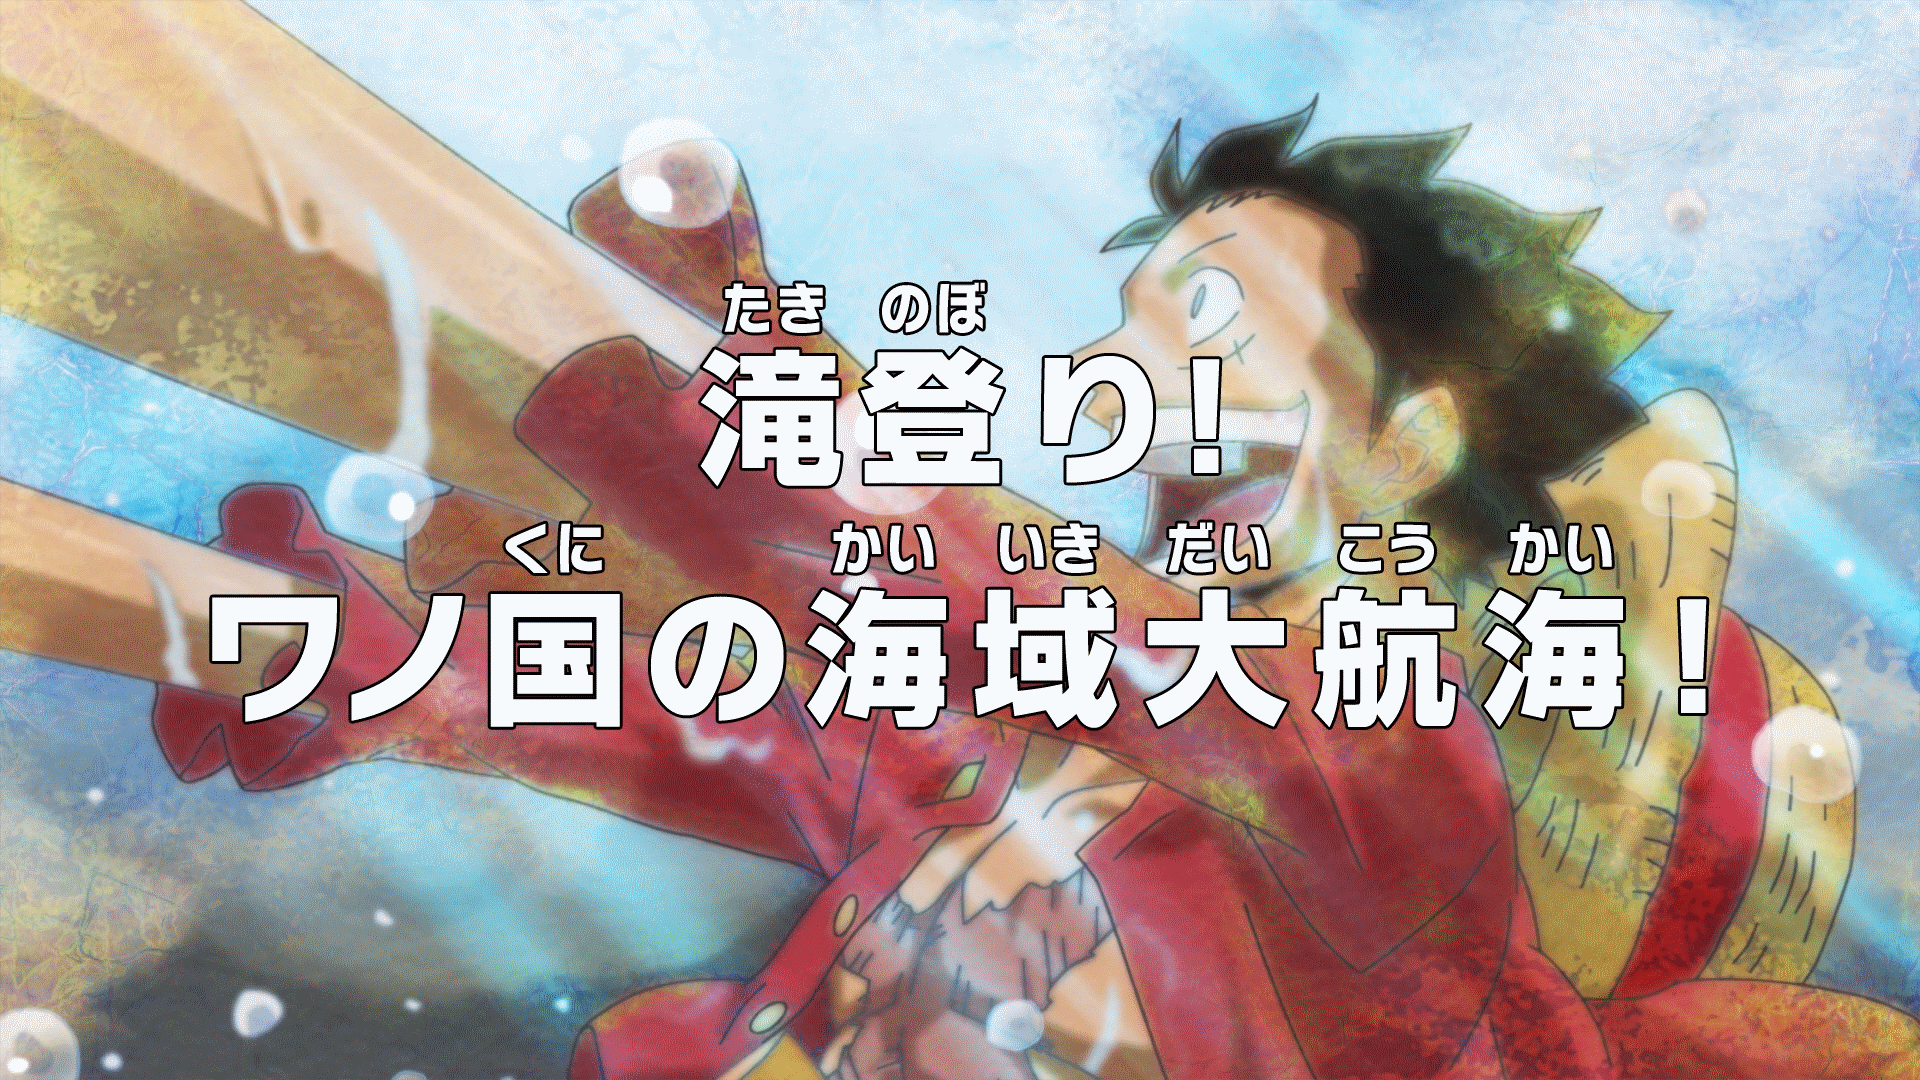 Images Of One Piece Anime Manga Episode